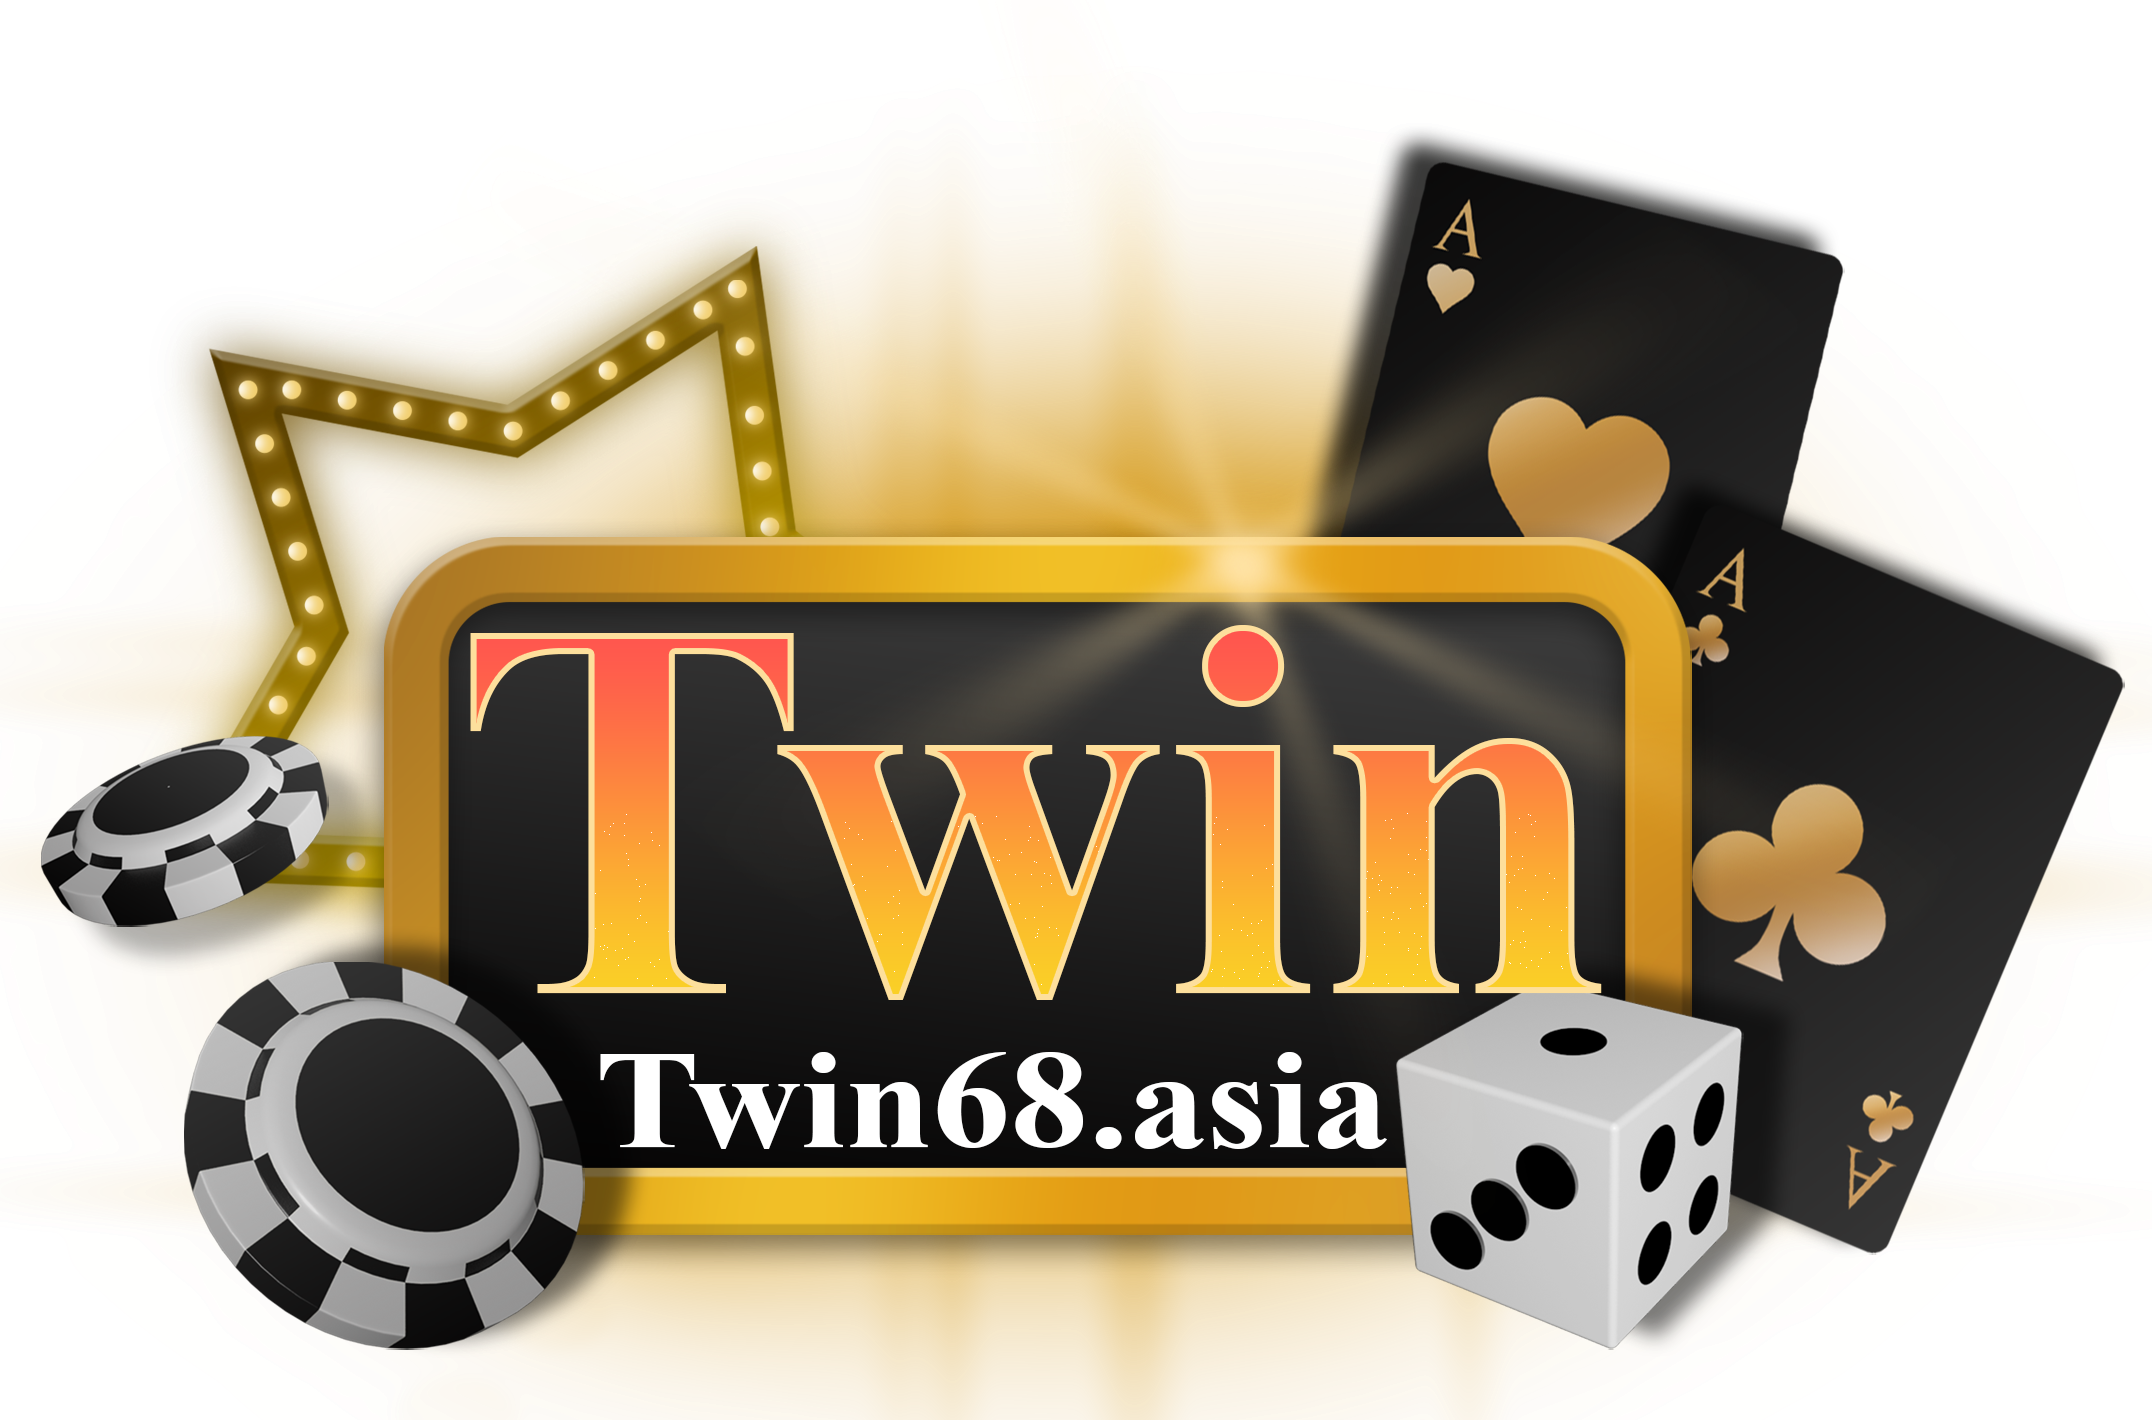 Twin – Twin68